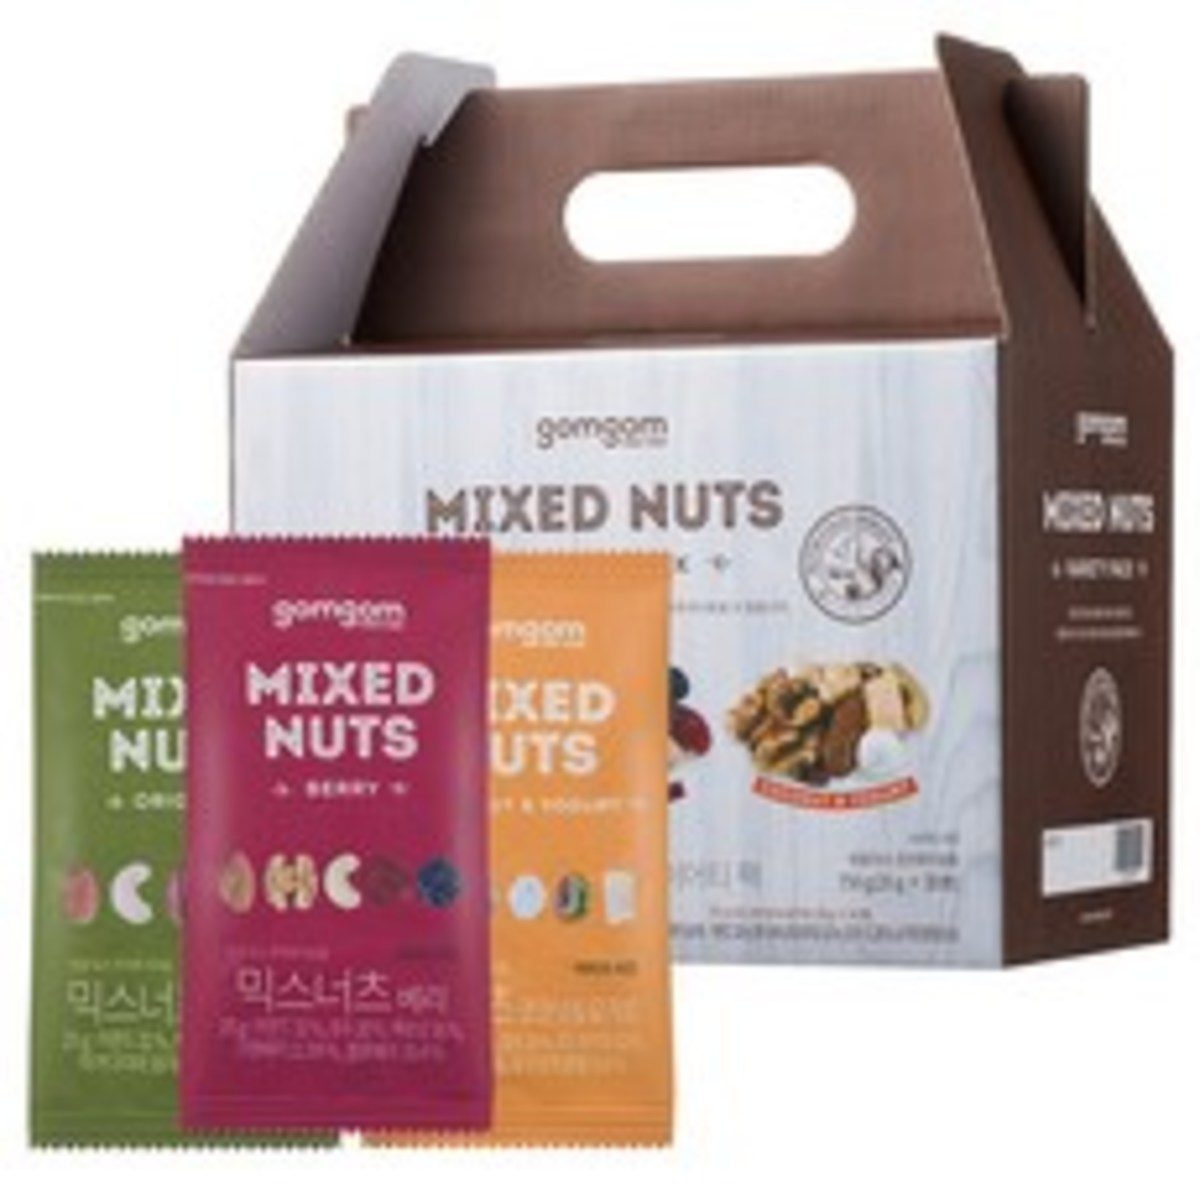 Mix Nuts E1599297333304 